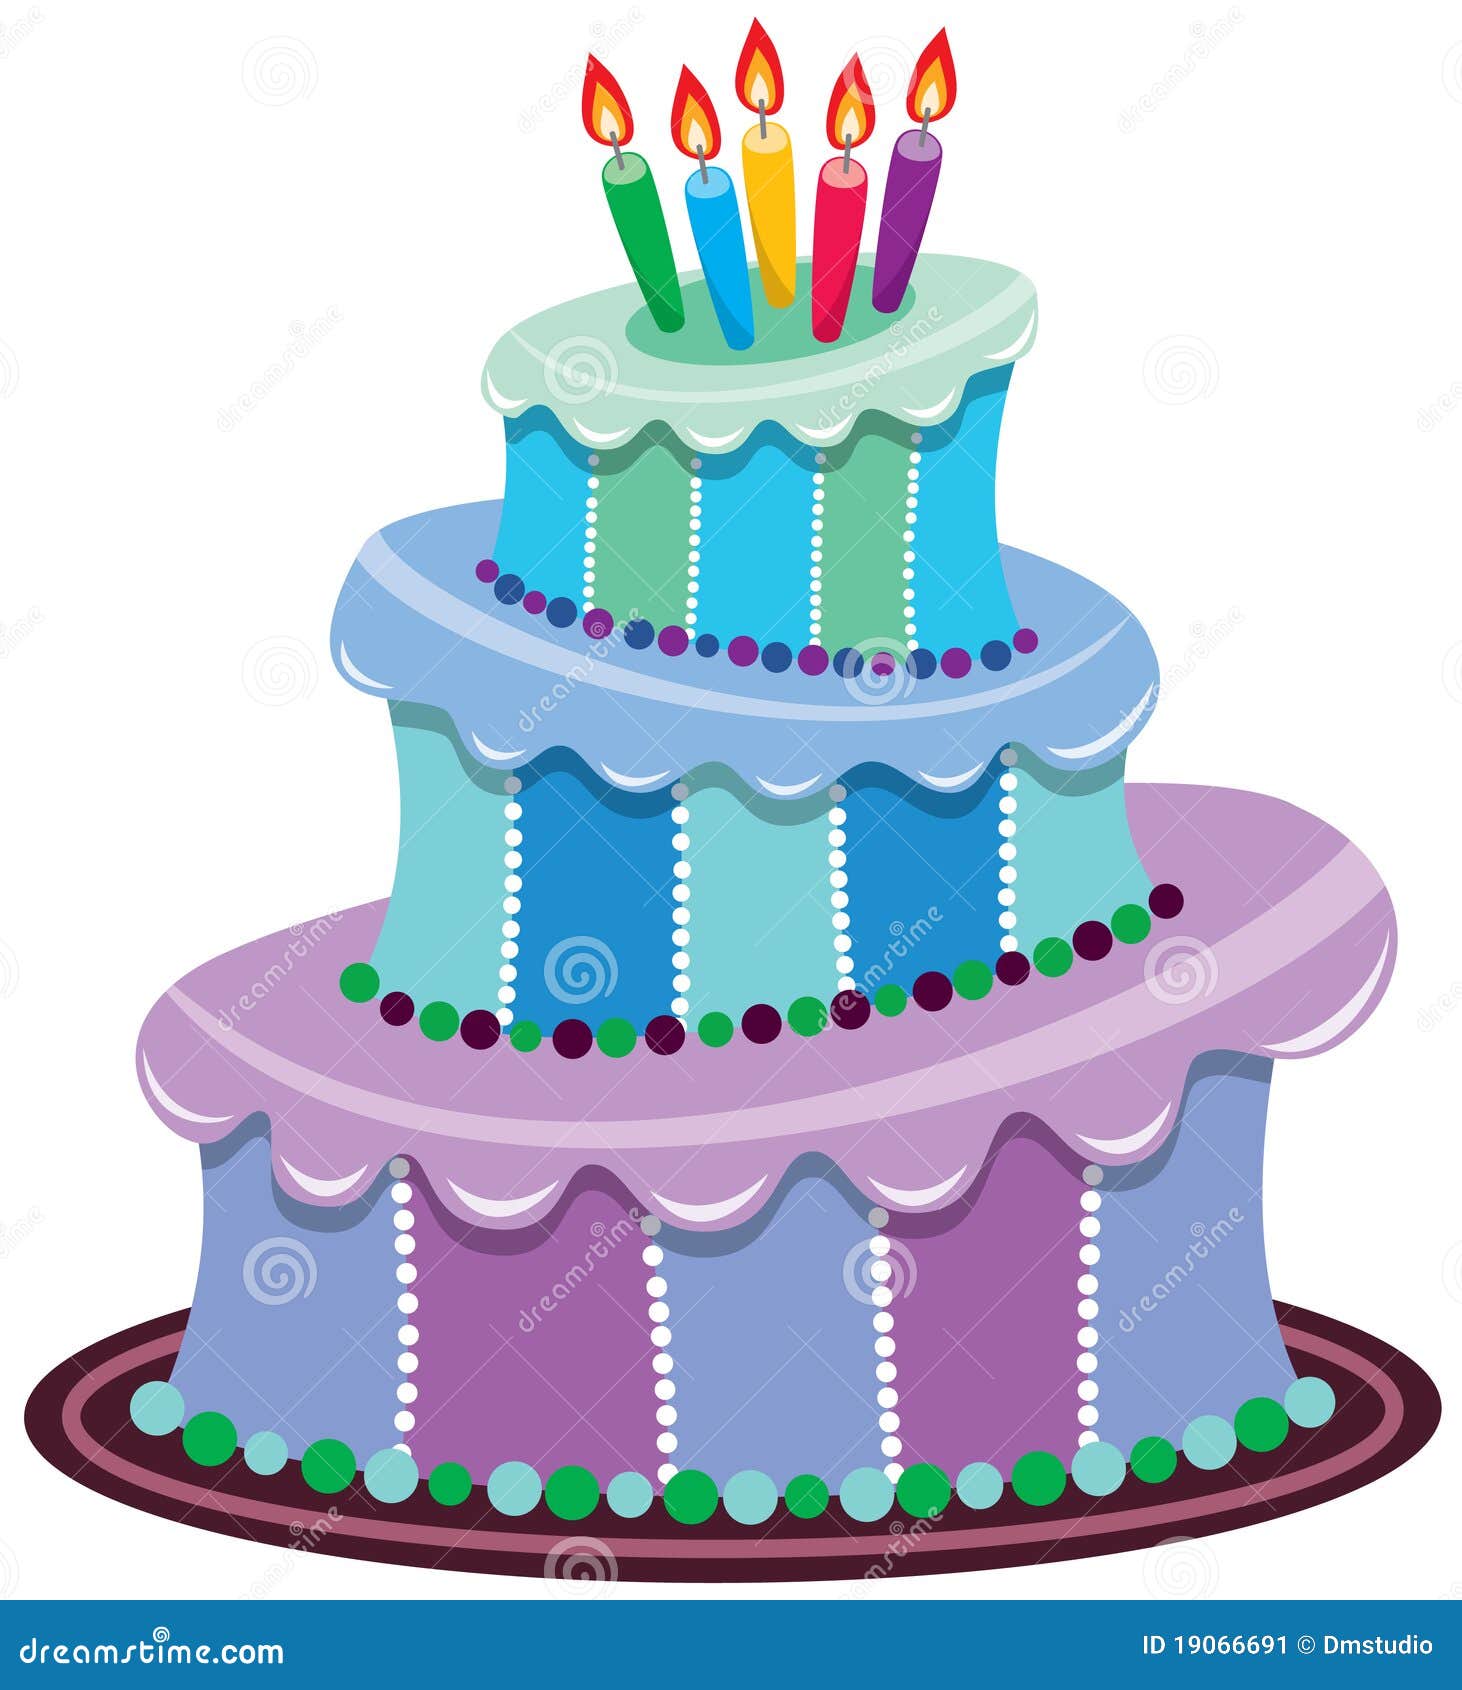 clipart tort urodzinowy - photo #9